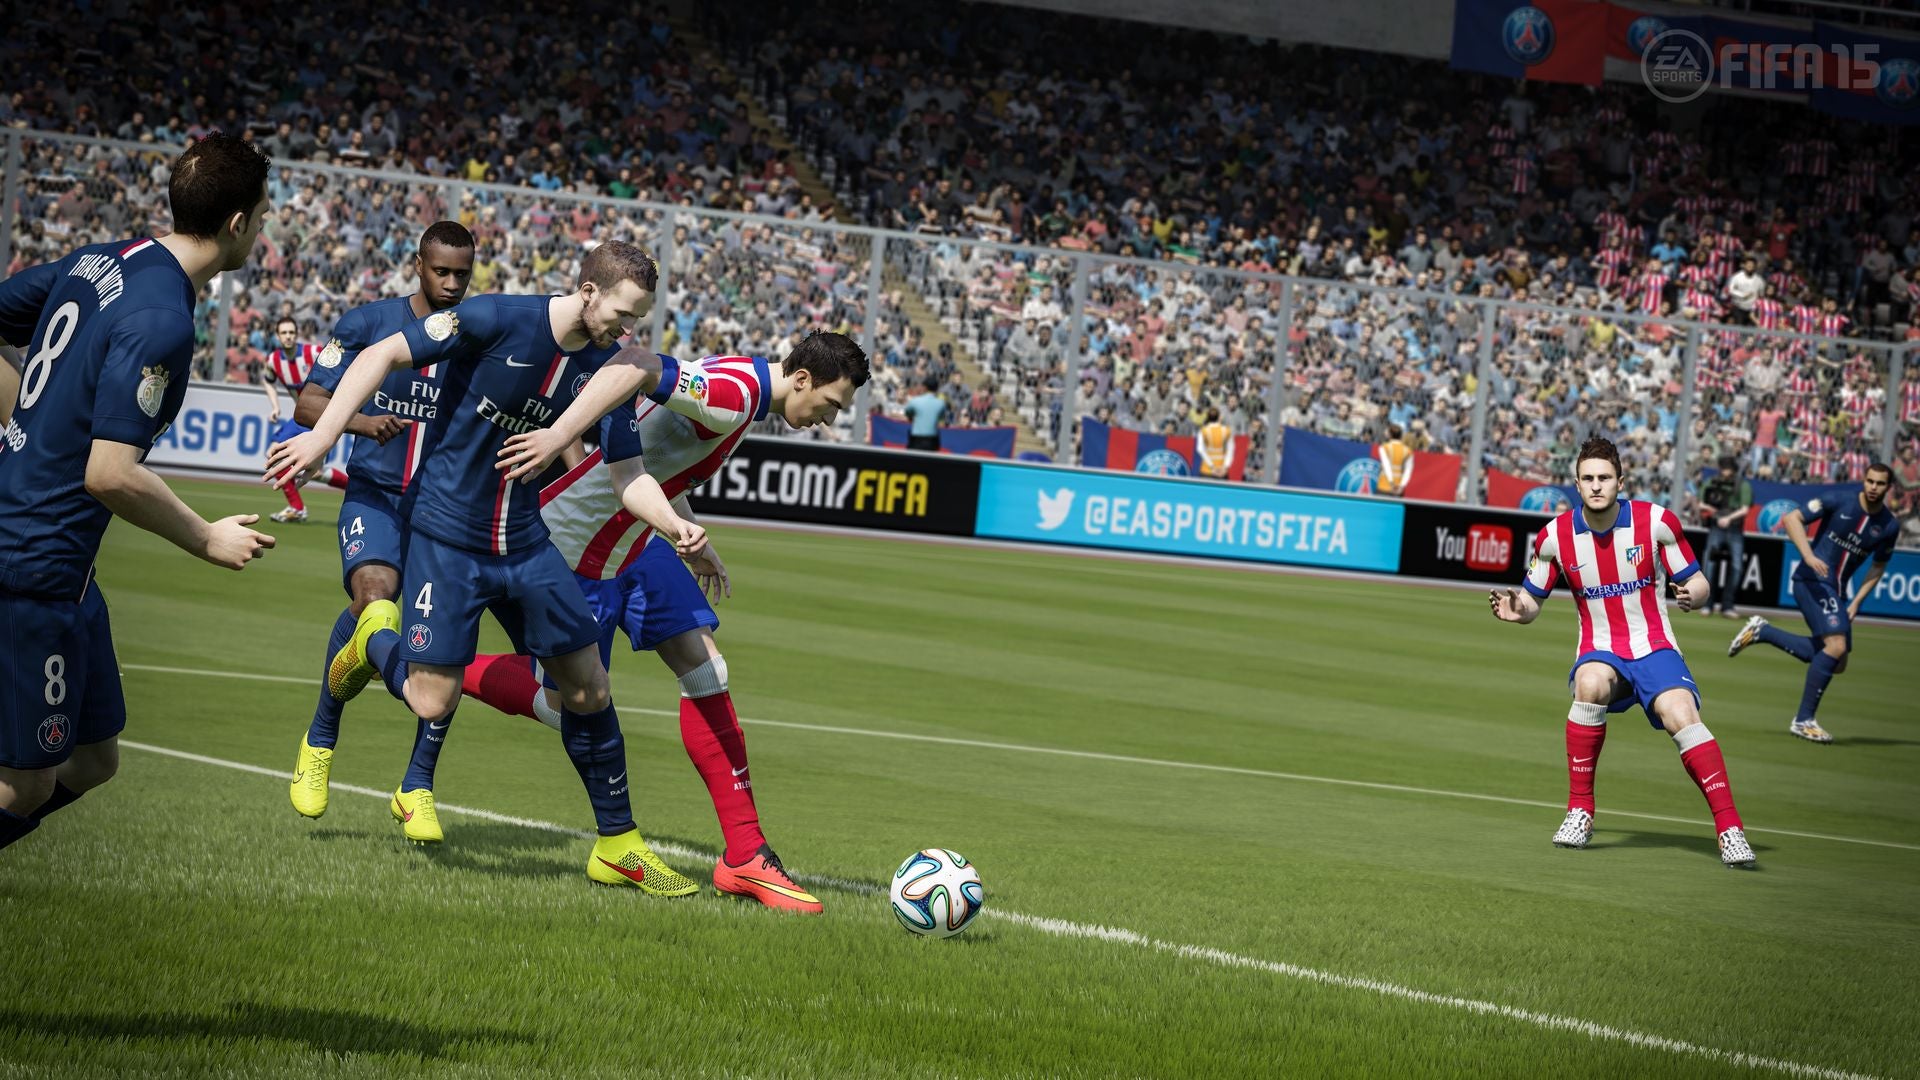 Obrazki dla Sprzedaż gier: FIFA 15 nie oddaje prowadzenia w Wielkiej Brytanii